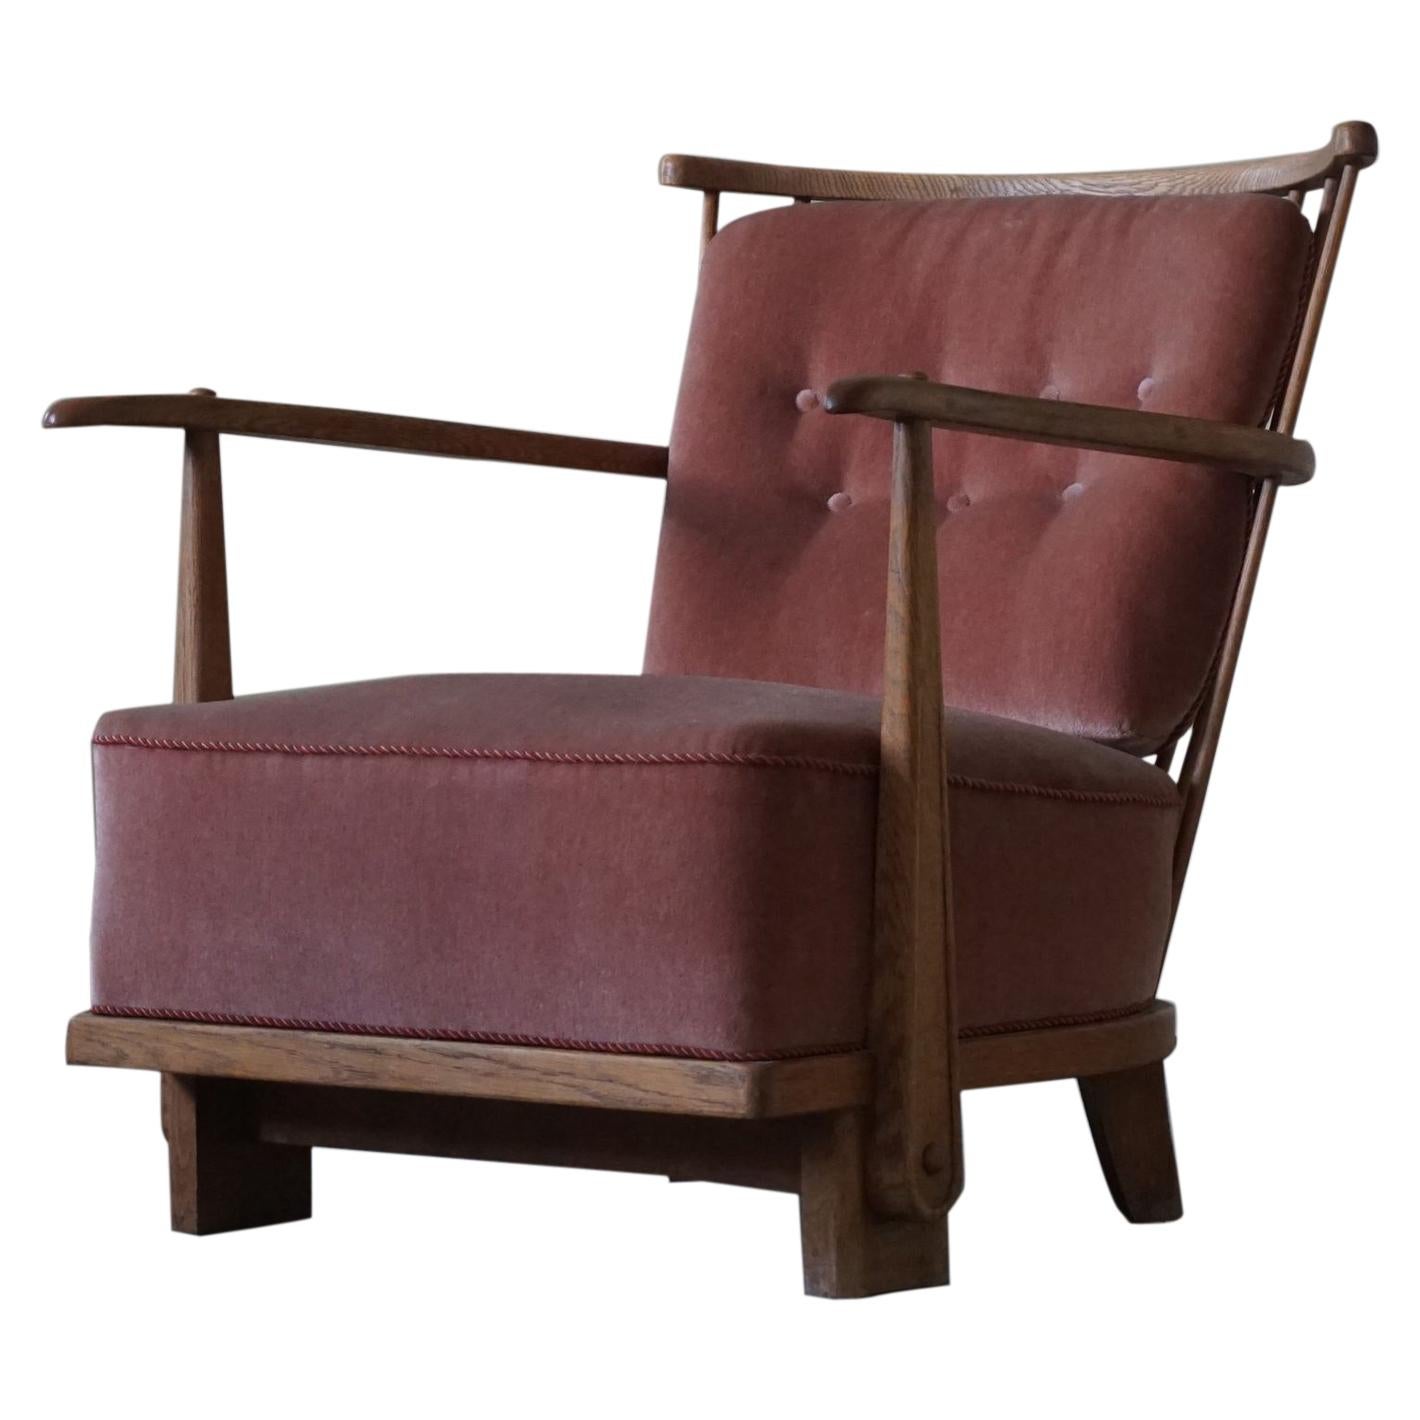 Early Danish Mid-Century Easy Chair in Oak by Fritz Hansen, Model 1590, 1940s